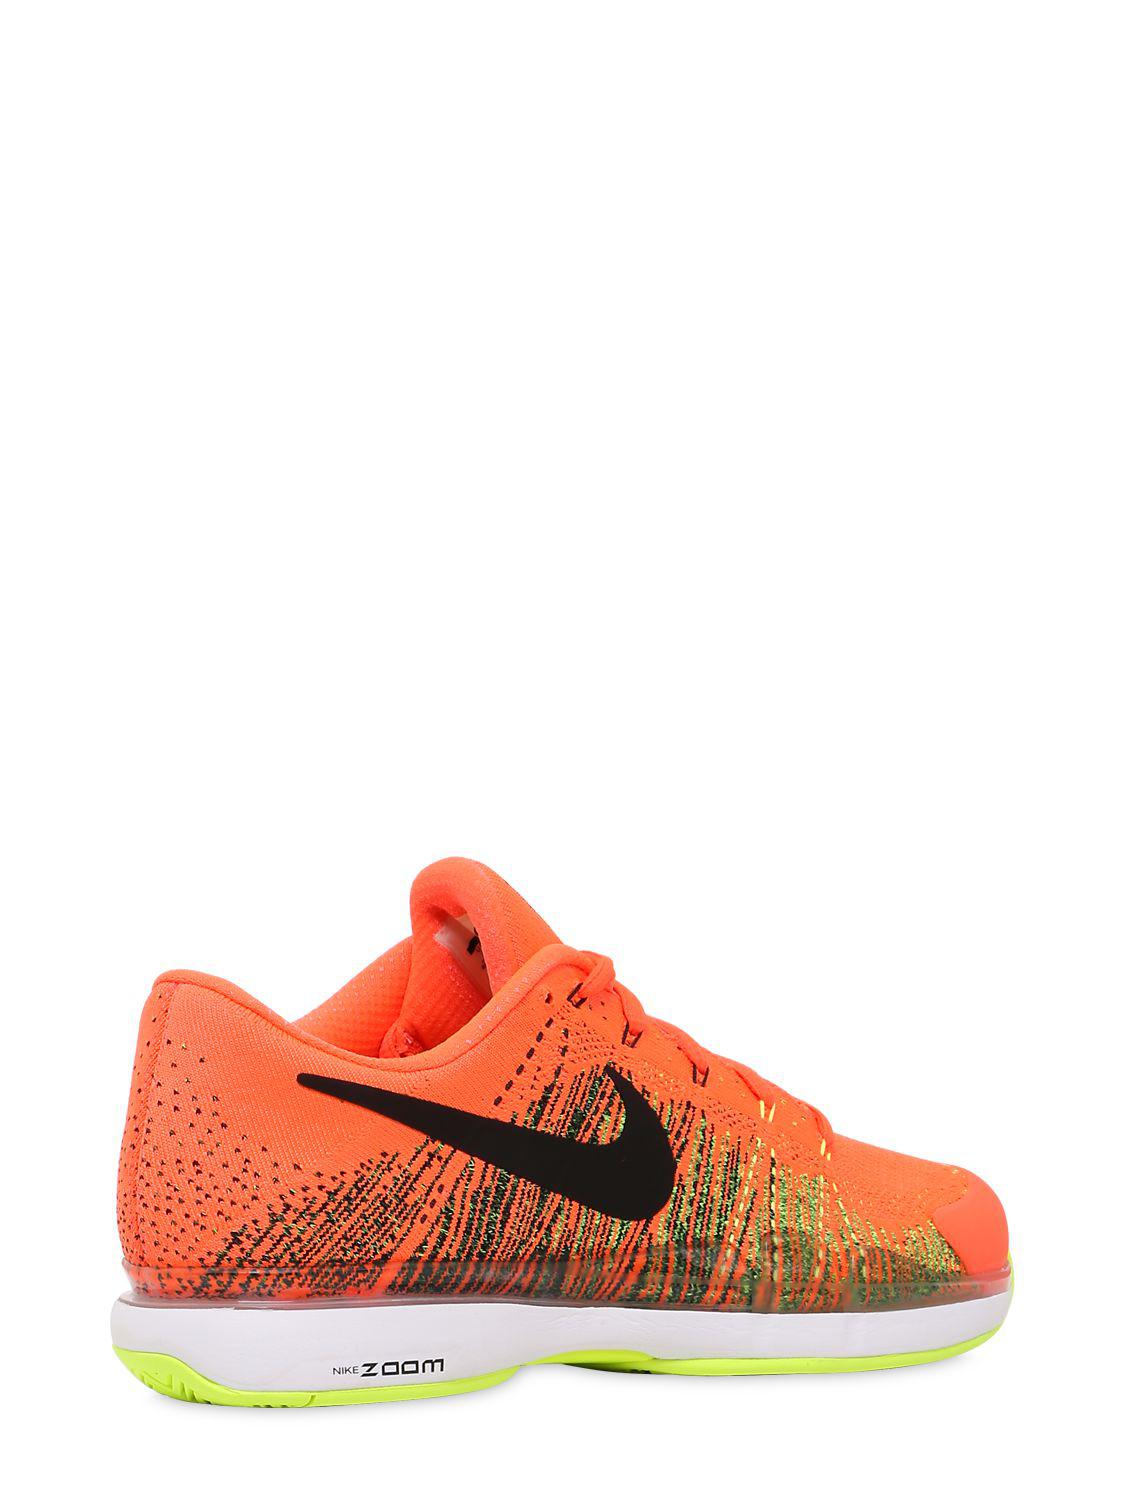 Nike Federer Zoom Vapor Flyknit Sneakers in Neon Orange (Orange) - Lyst